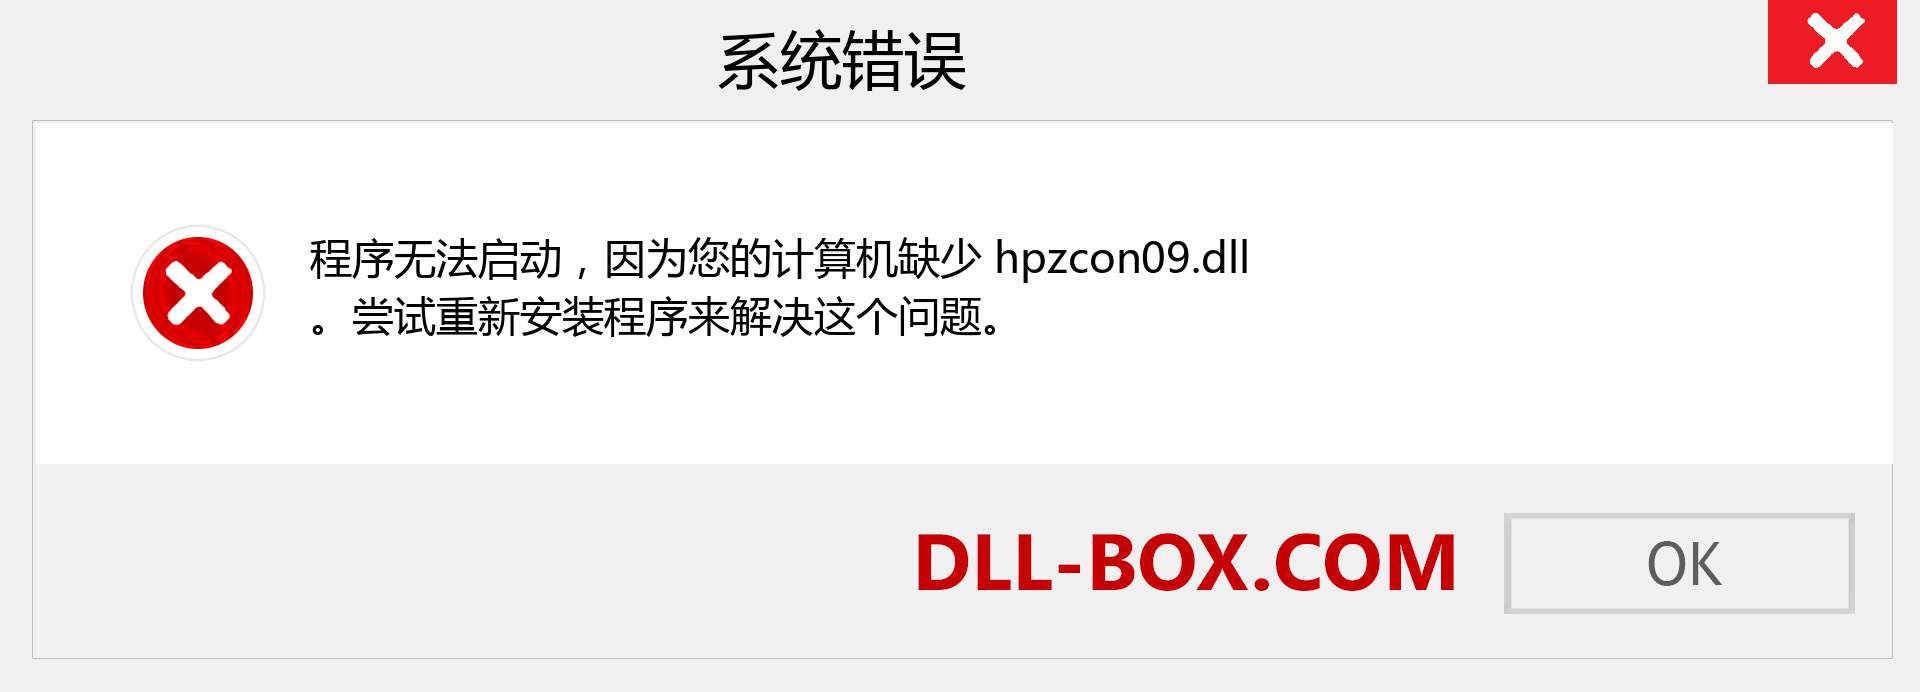 hpzcon09.dll 文件丢失？。 适用于 Windows 7、8、10 的下载 - 修复 Windows、照片、图像上的 hpzcon09 dll 丢失错误